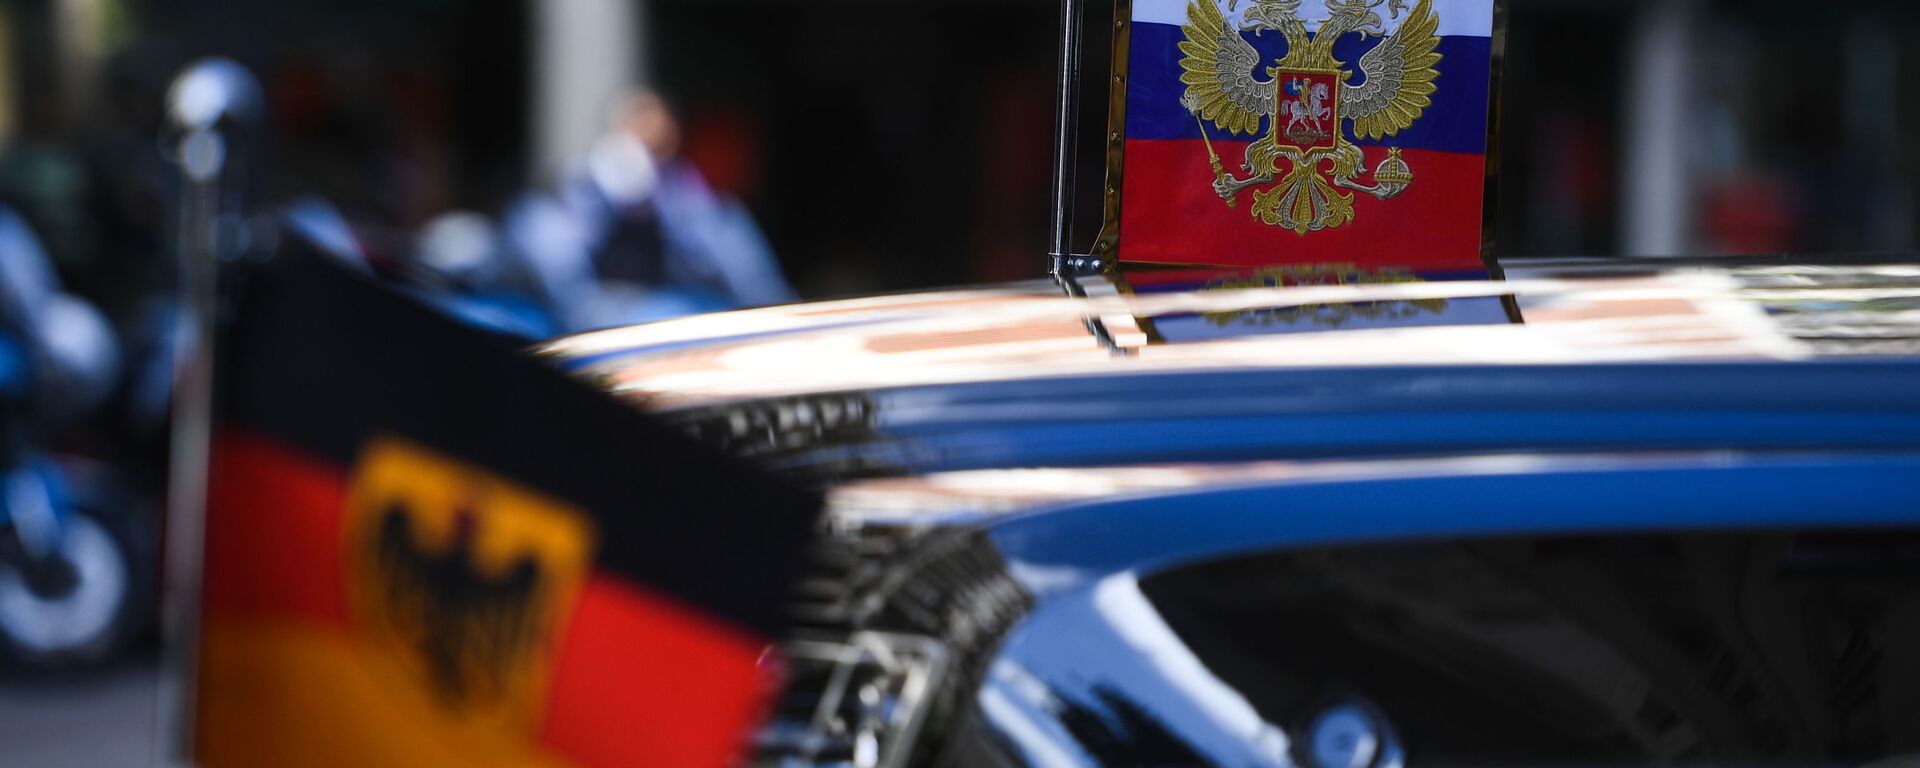 Ruska i nemačka zastava na automobilu predsednika Rusija - Sputnik Srbija, 1920, 26.12.2021